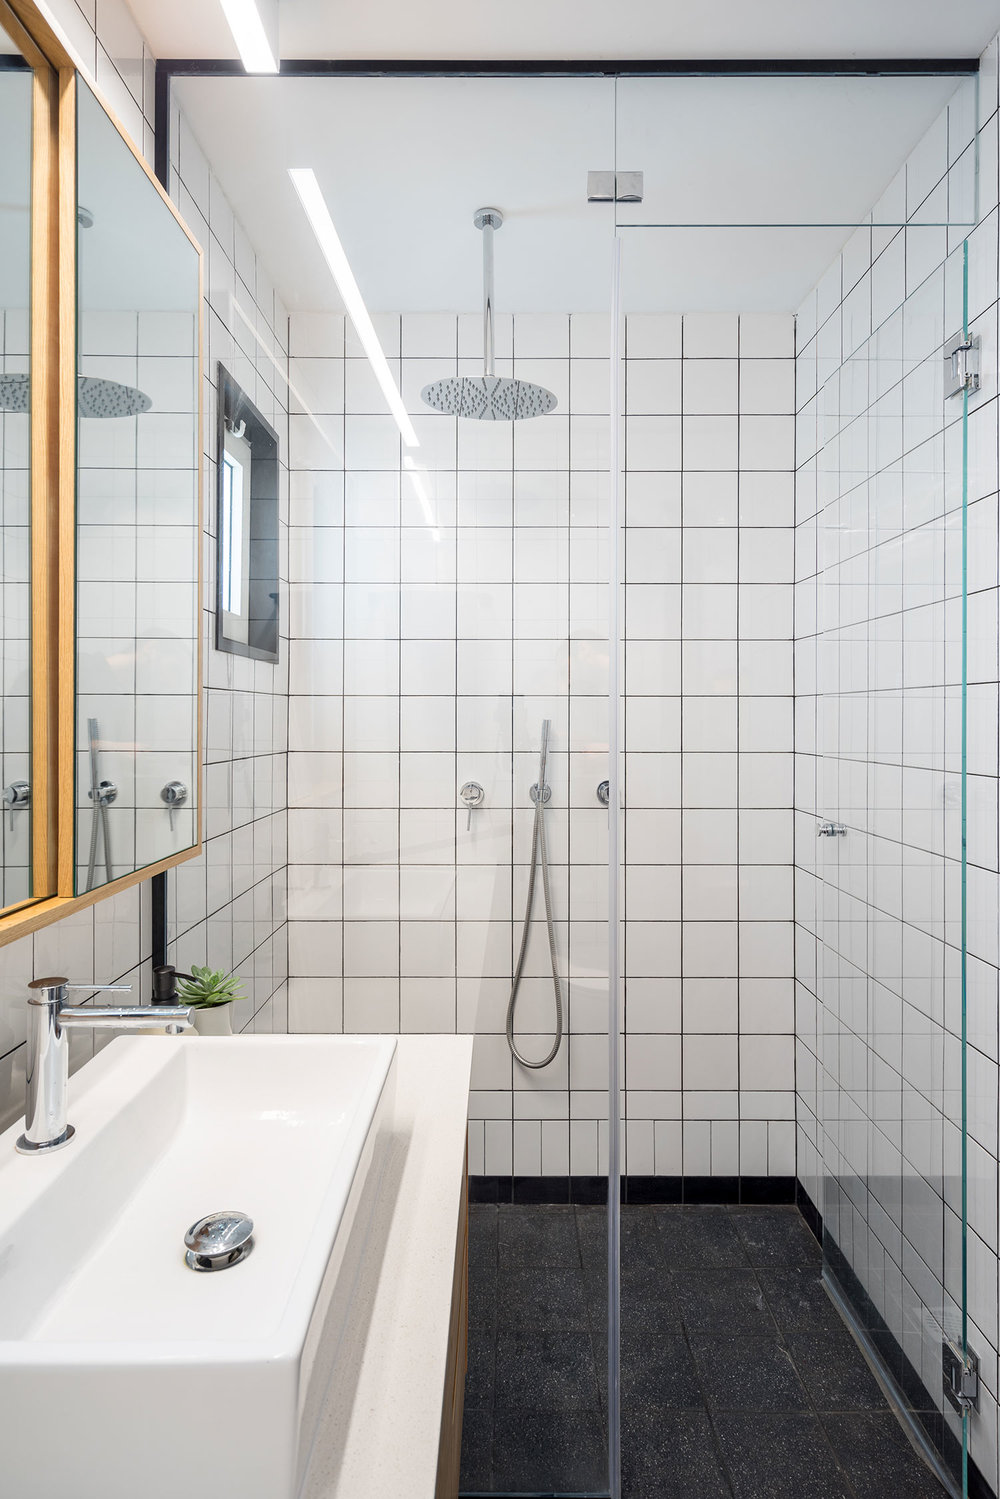 Fonkelnieuw 70 badkamers voorbeelden, tips en ideeën!| Huis-inrichten.com AR-19